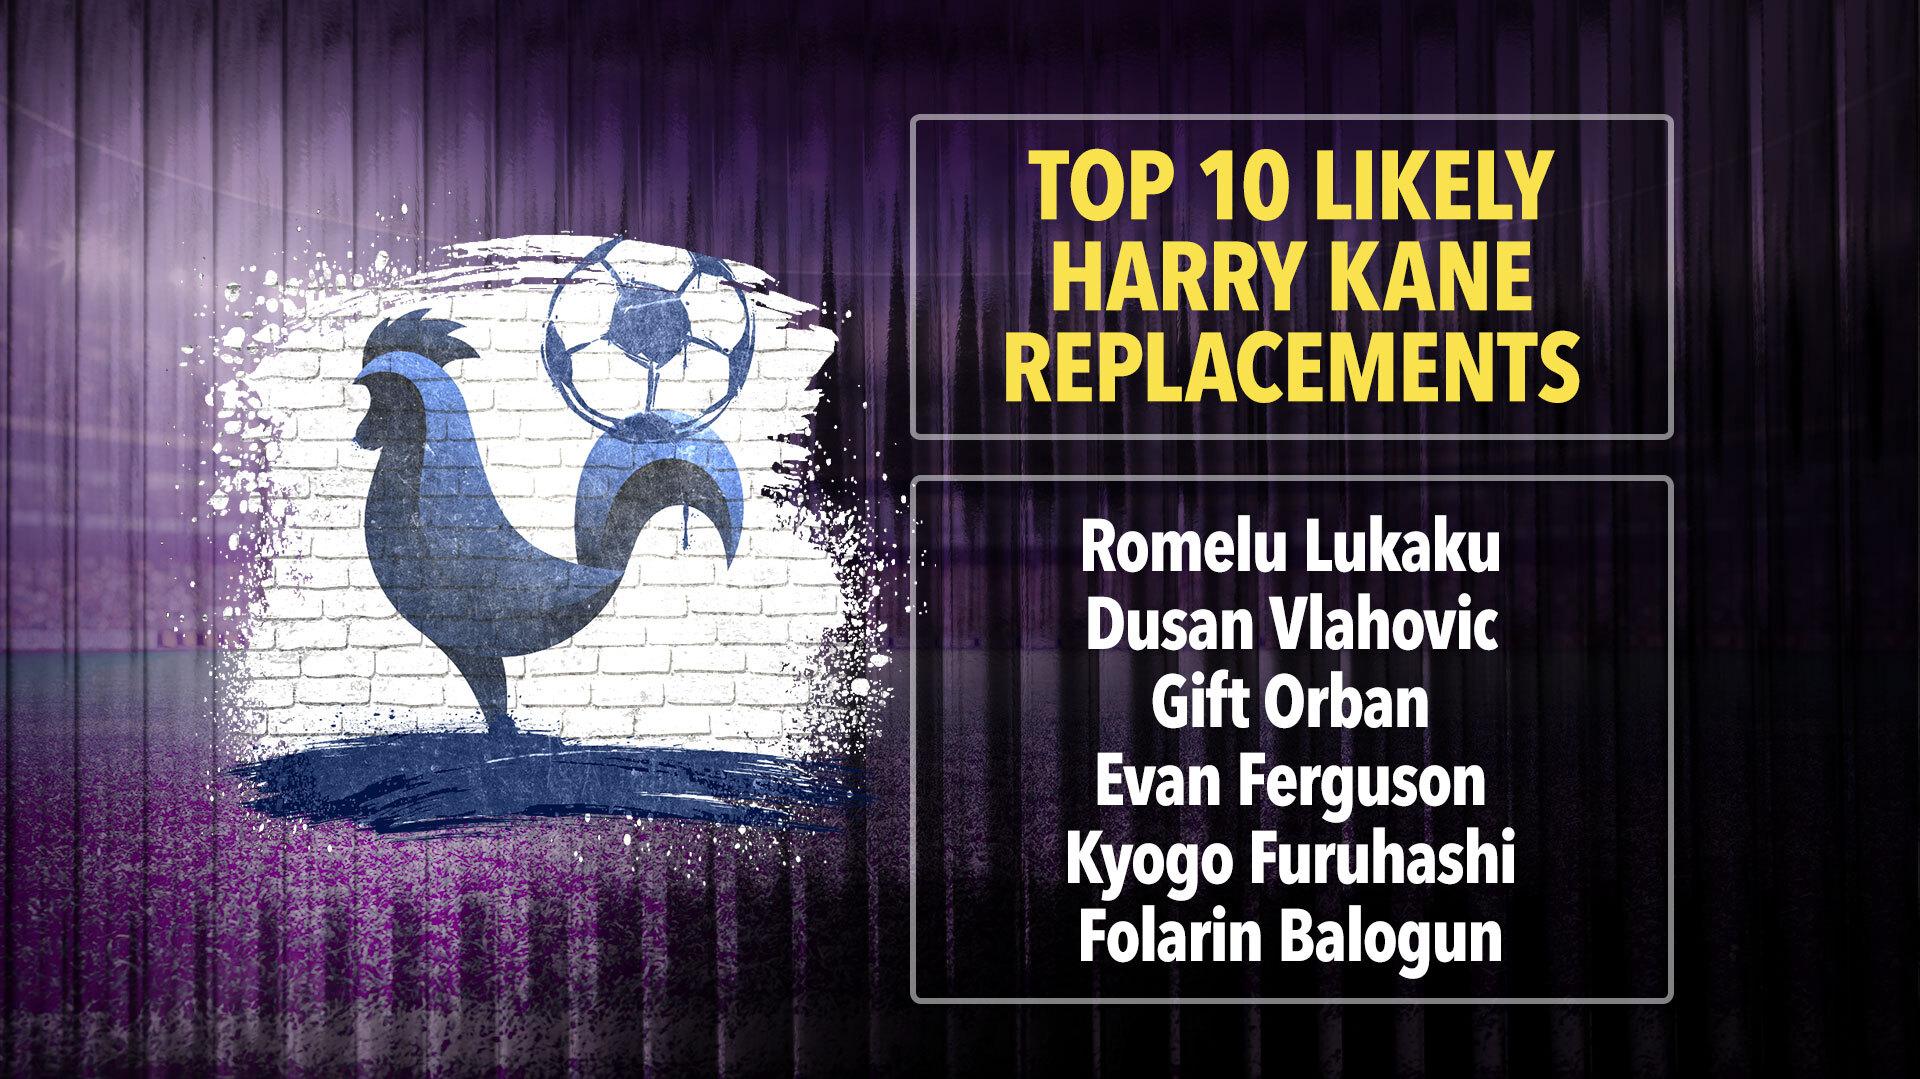 Tottenham Transfer News Romelu Lukaku Favourite To Replace Harry